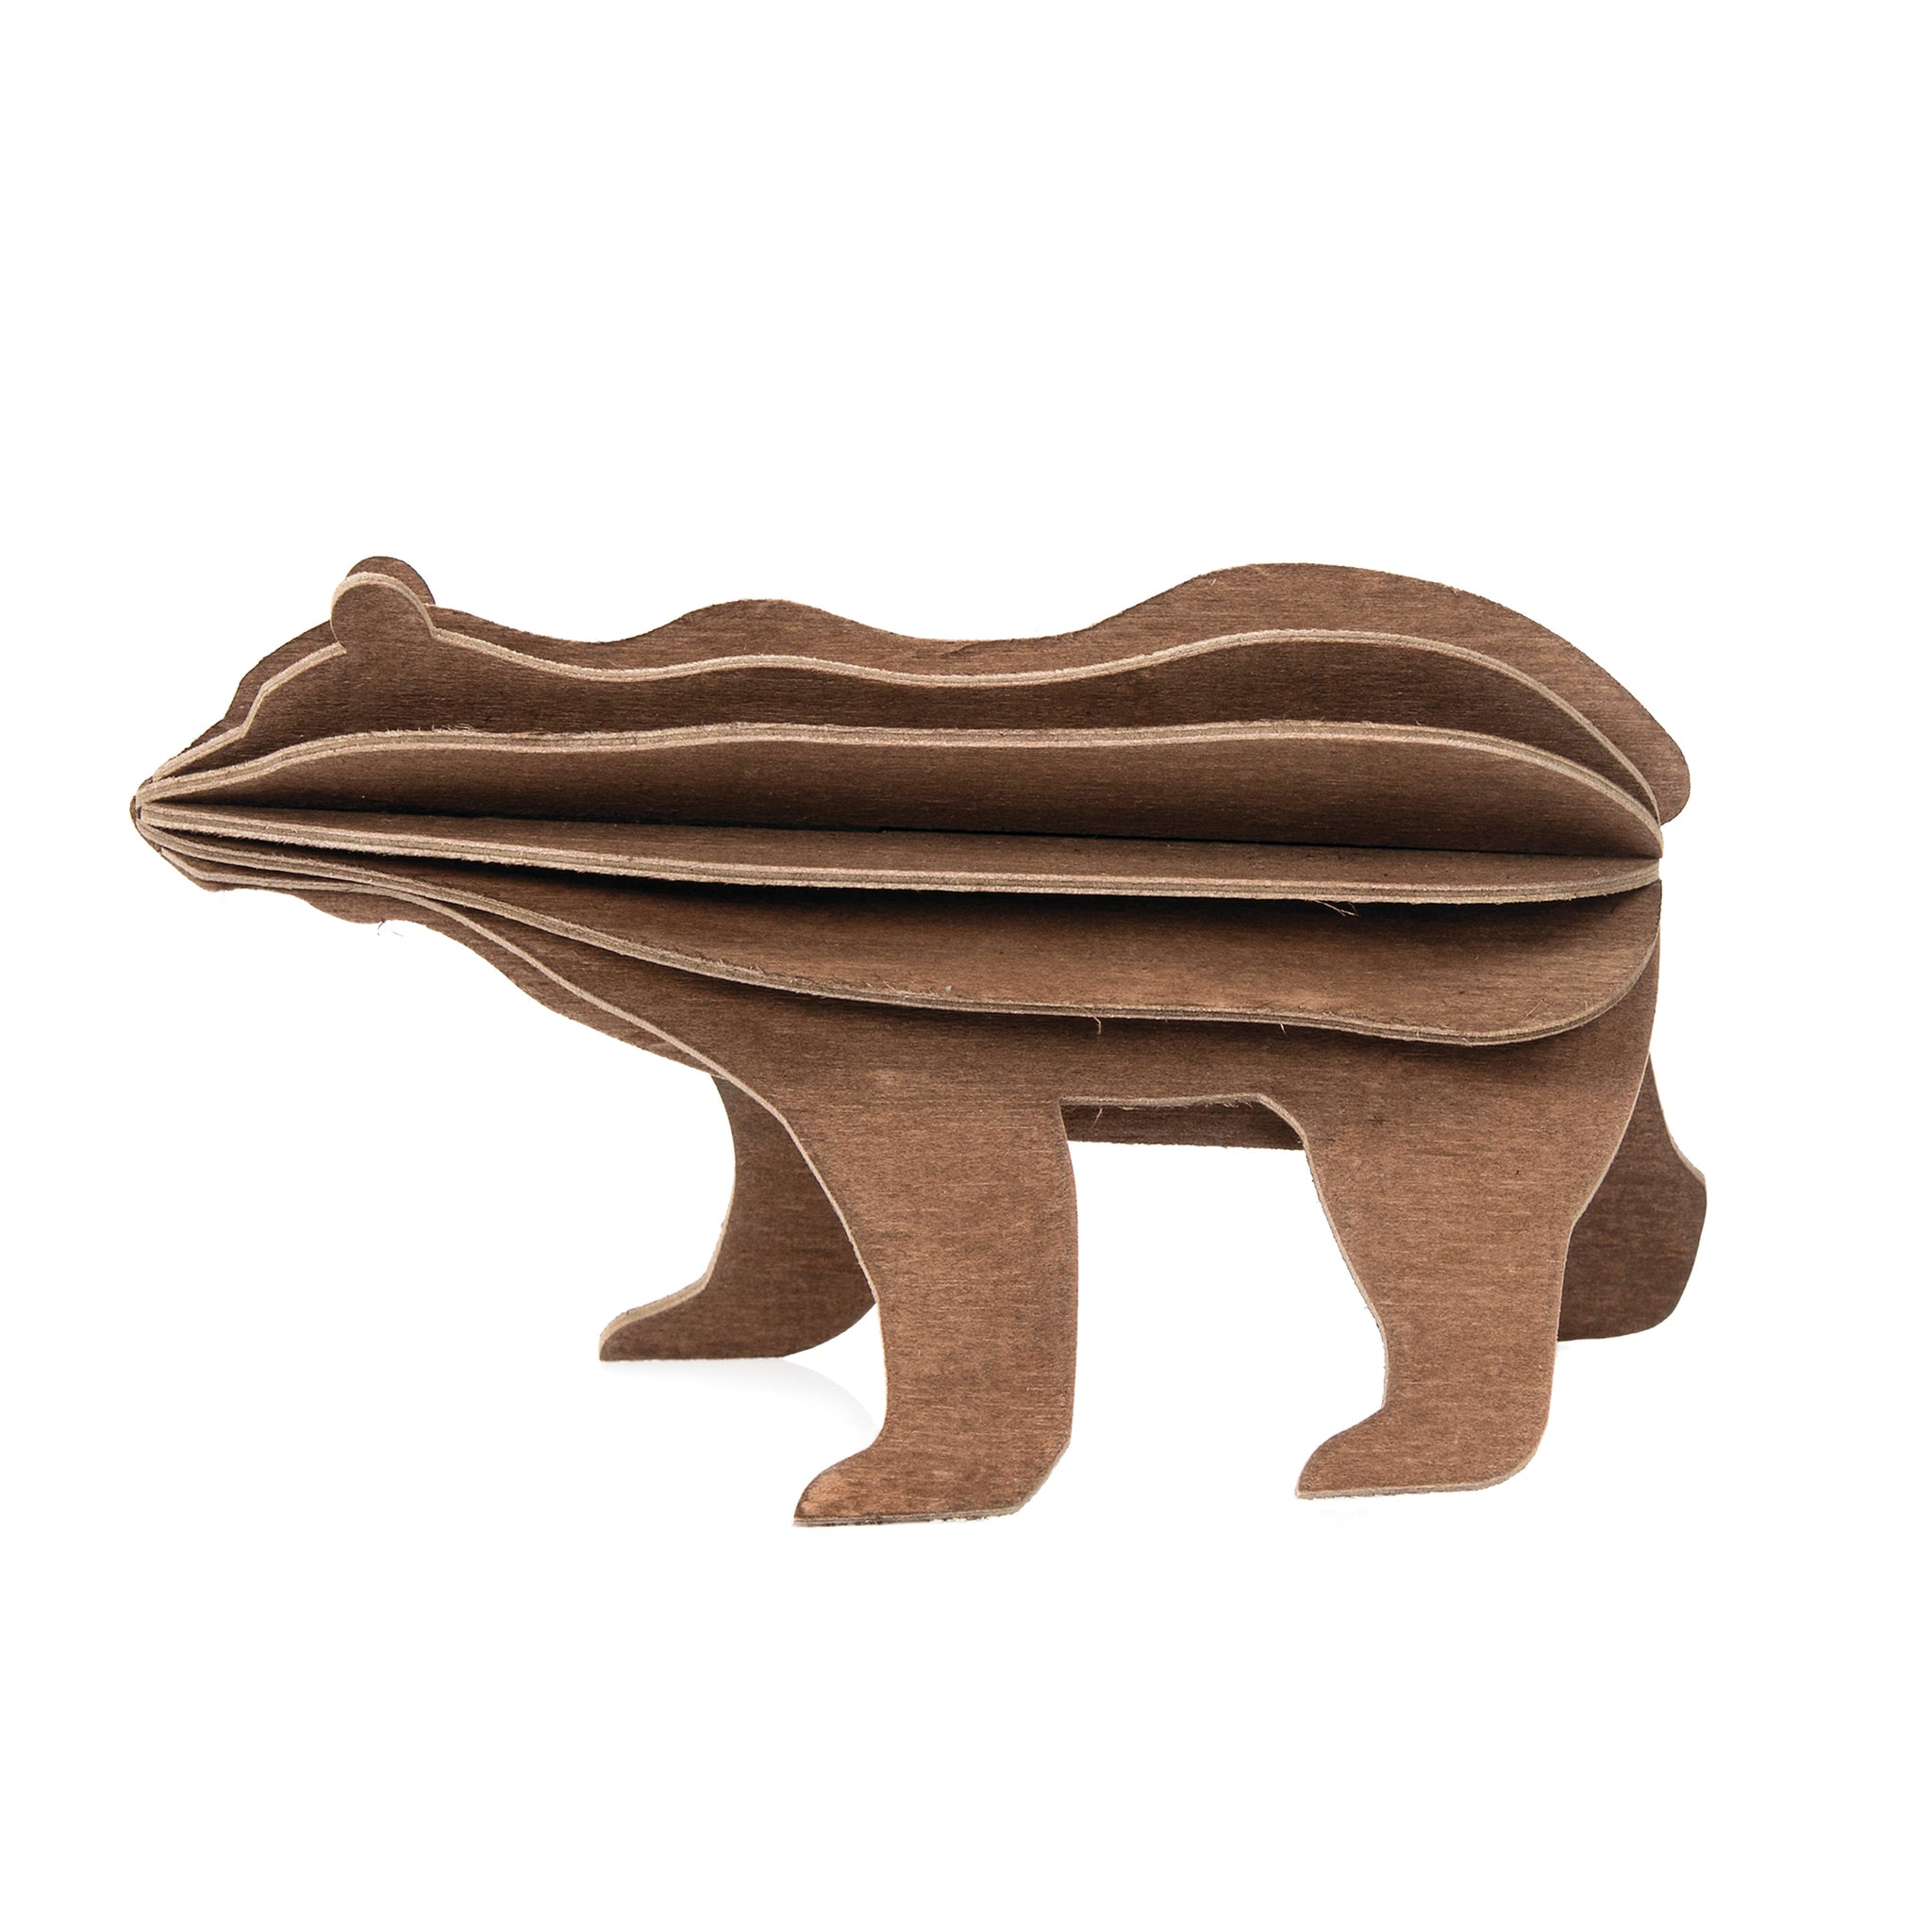 Lovi Bear  13.5cm Brown